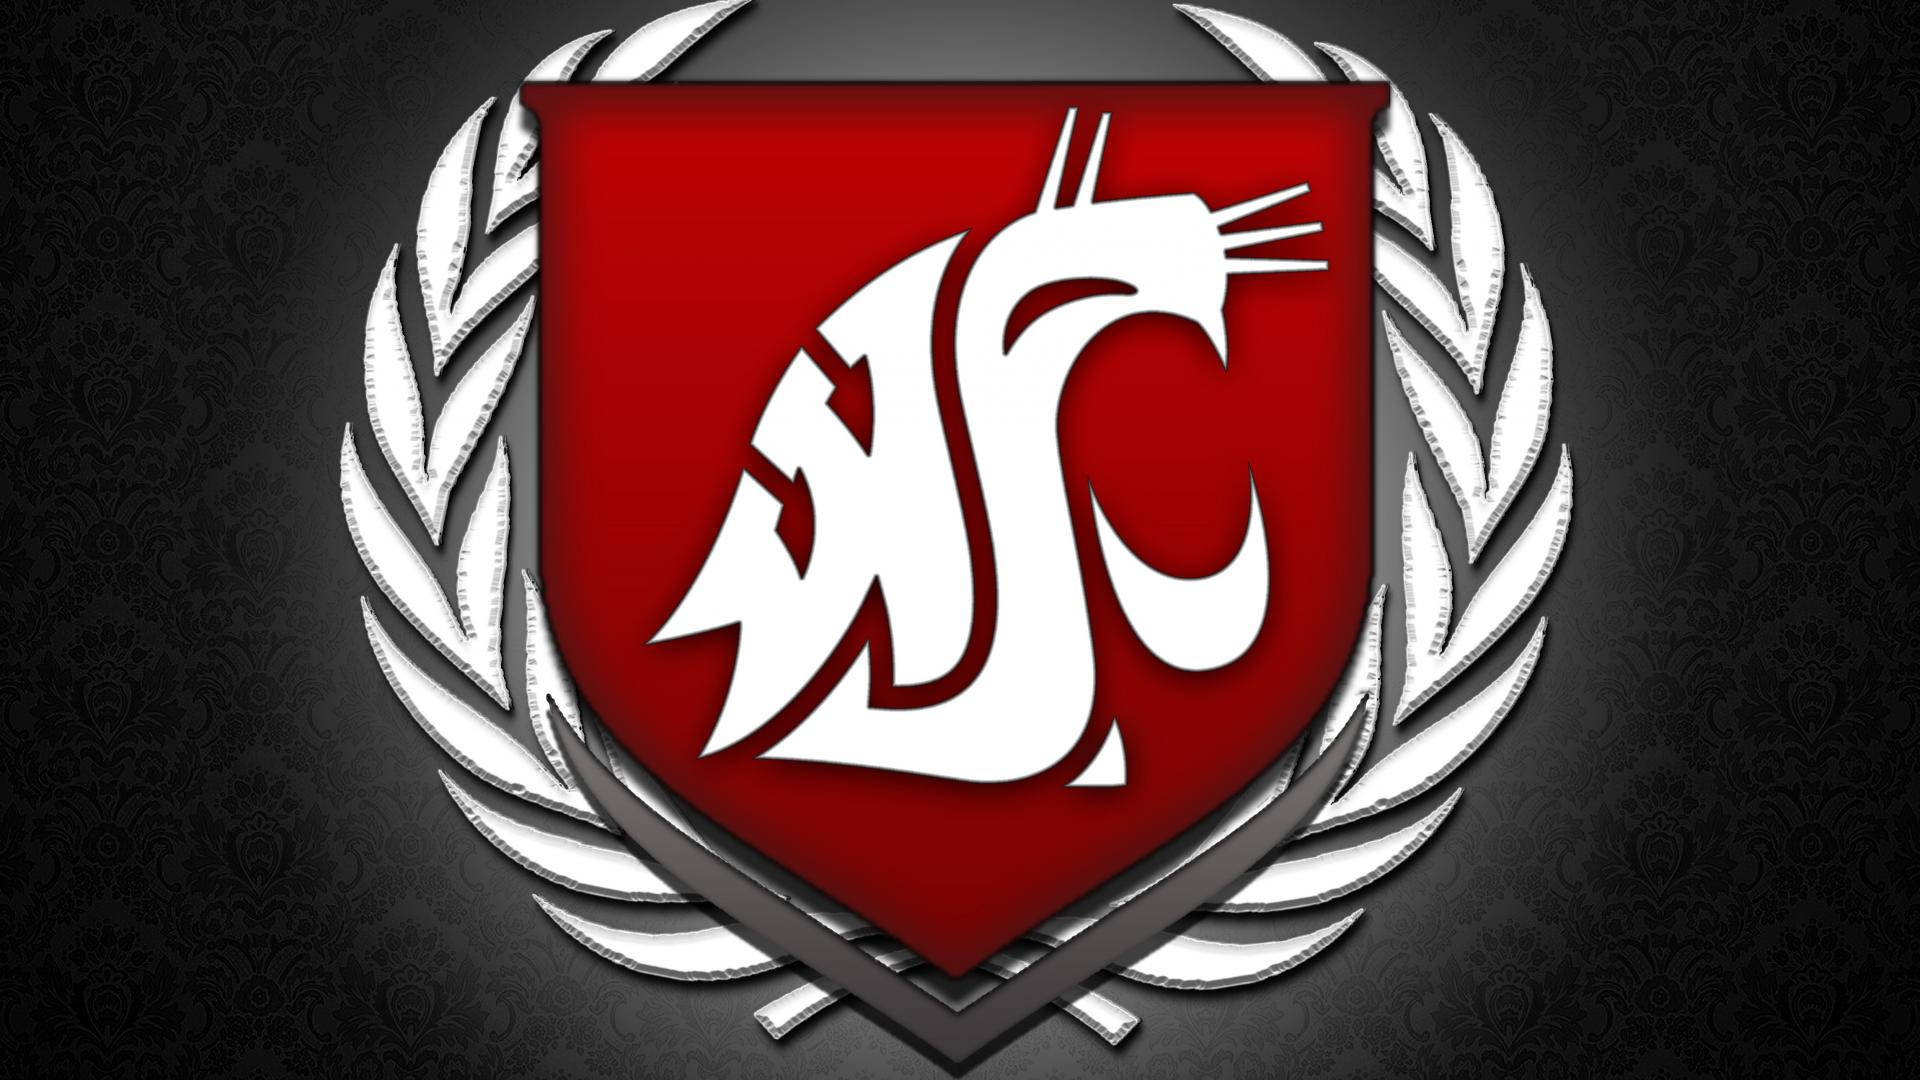 Logodei Washington State University Cougars Nero. Sfondo